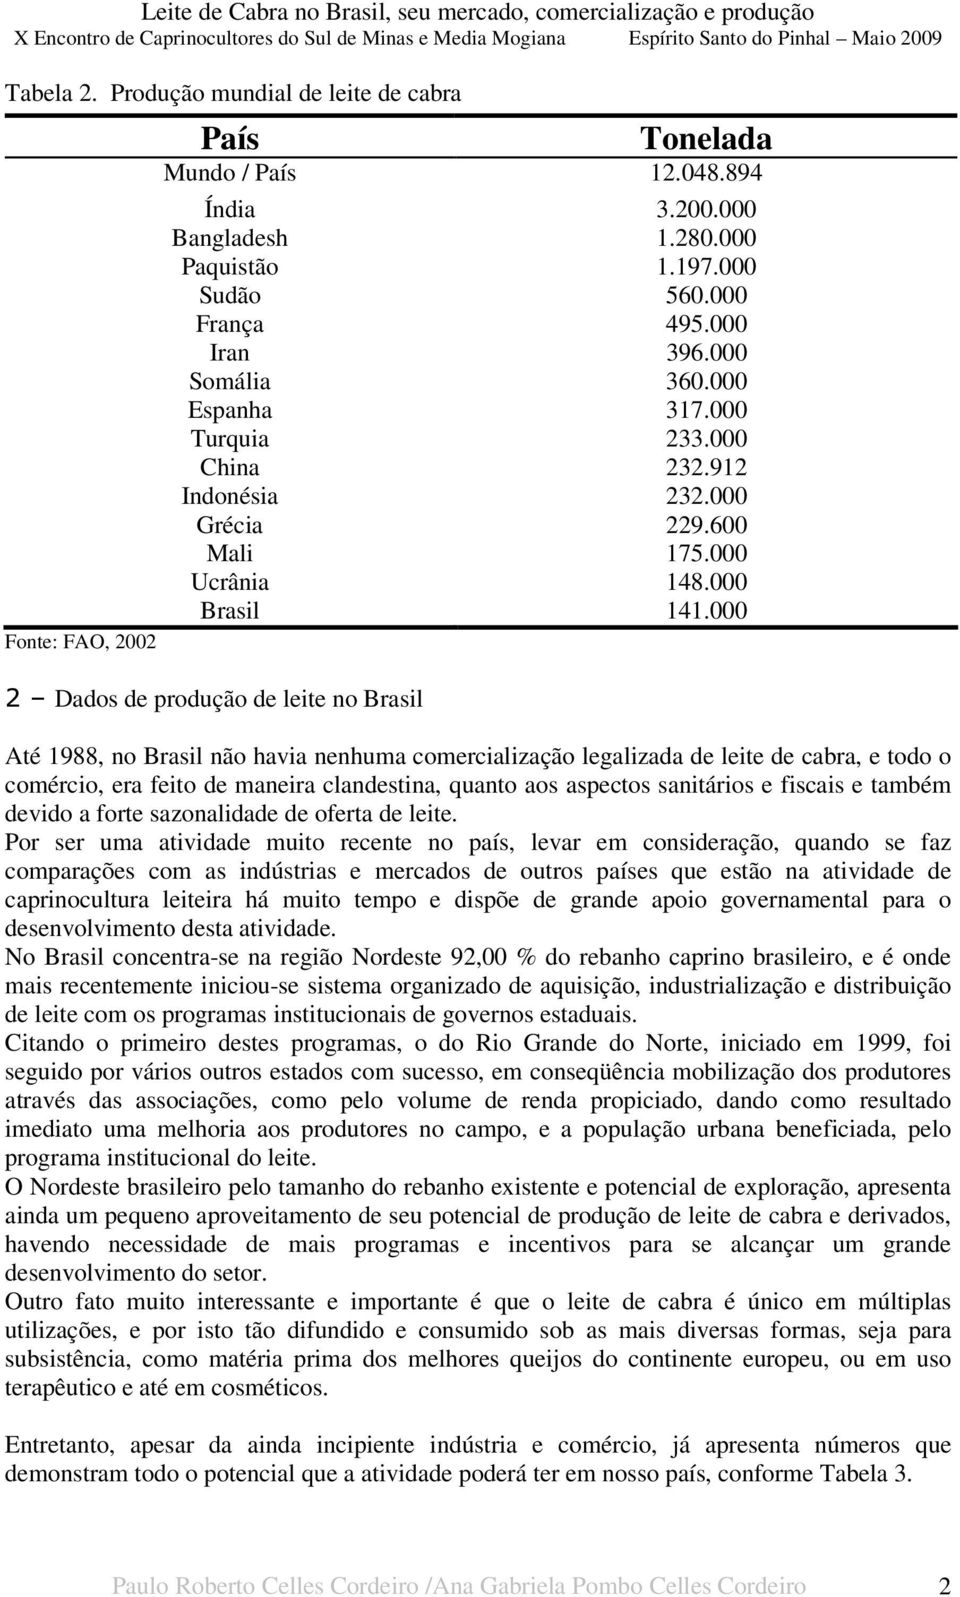 000 2 Dados de produção de leite no Brasil Até 1988, no Brasil não havia nenhuma comercialização legalizada de leite de cabra, e todo o comércio, era feito de maneira clandestina, quanto aos aspectos